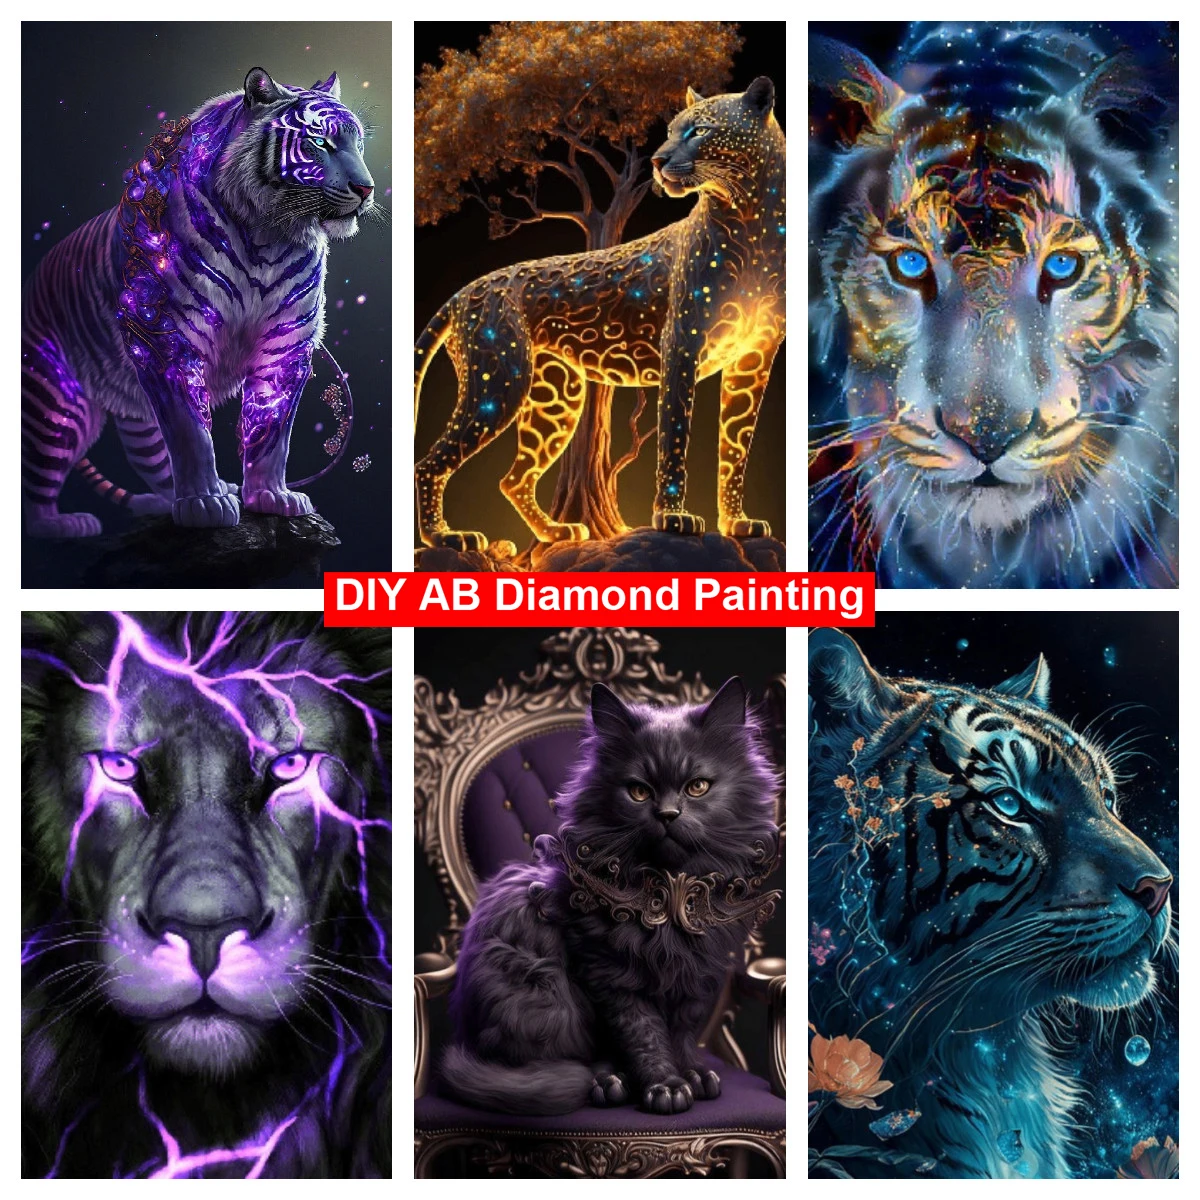 

Животные 5D алмазная вышивка своими руками картина лев тигр полная AB круглая квадратная дрель алмазная живопись вышивка крестиком искусство рукоделие